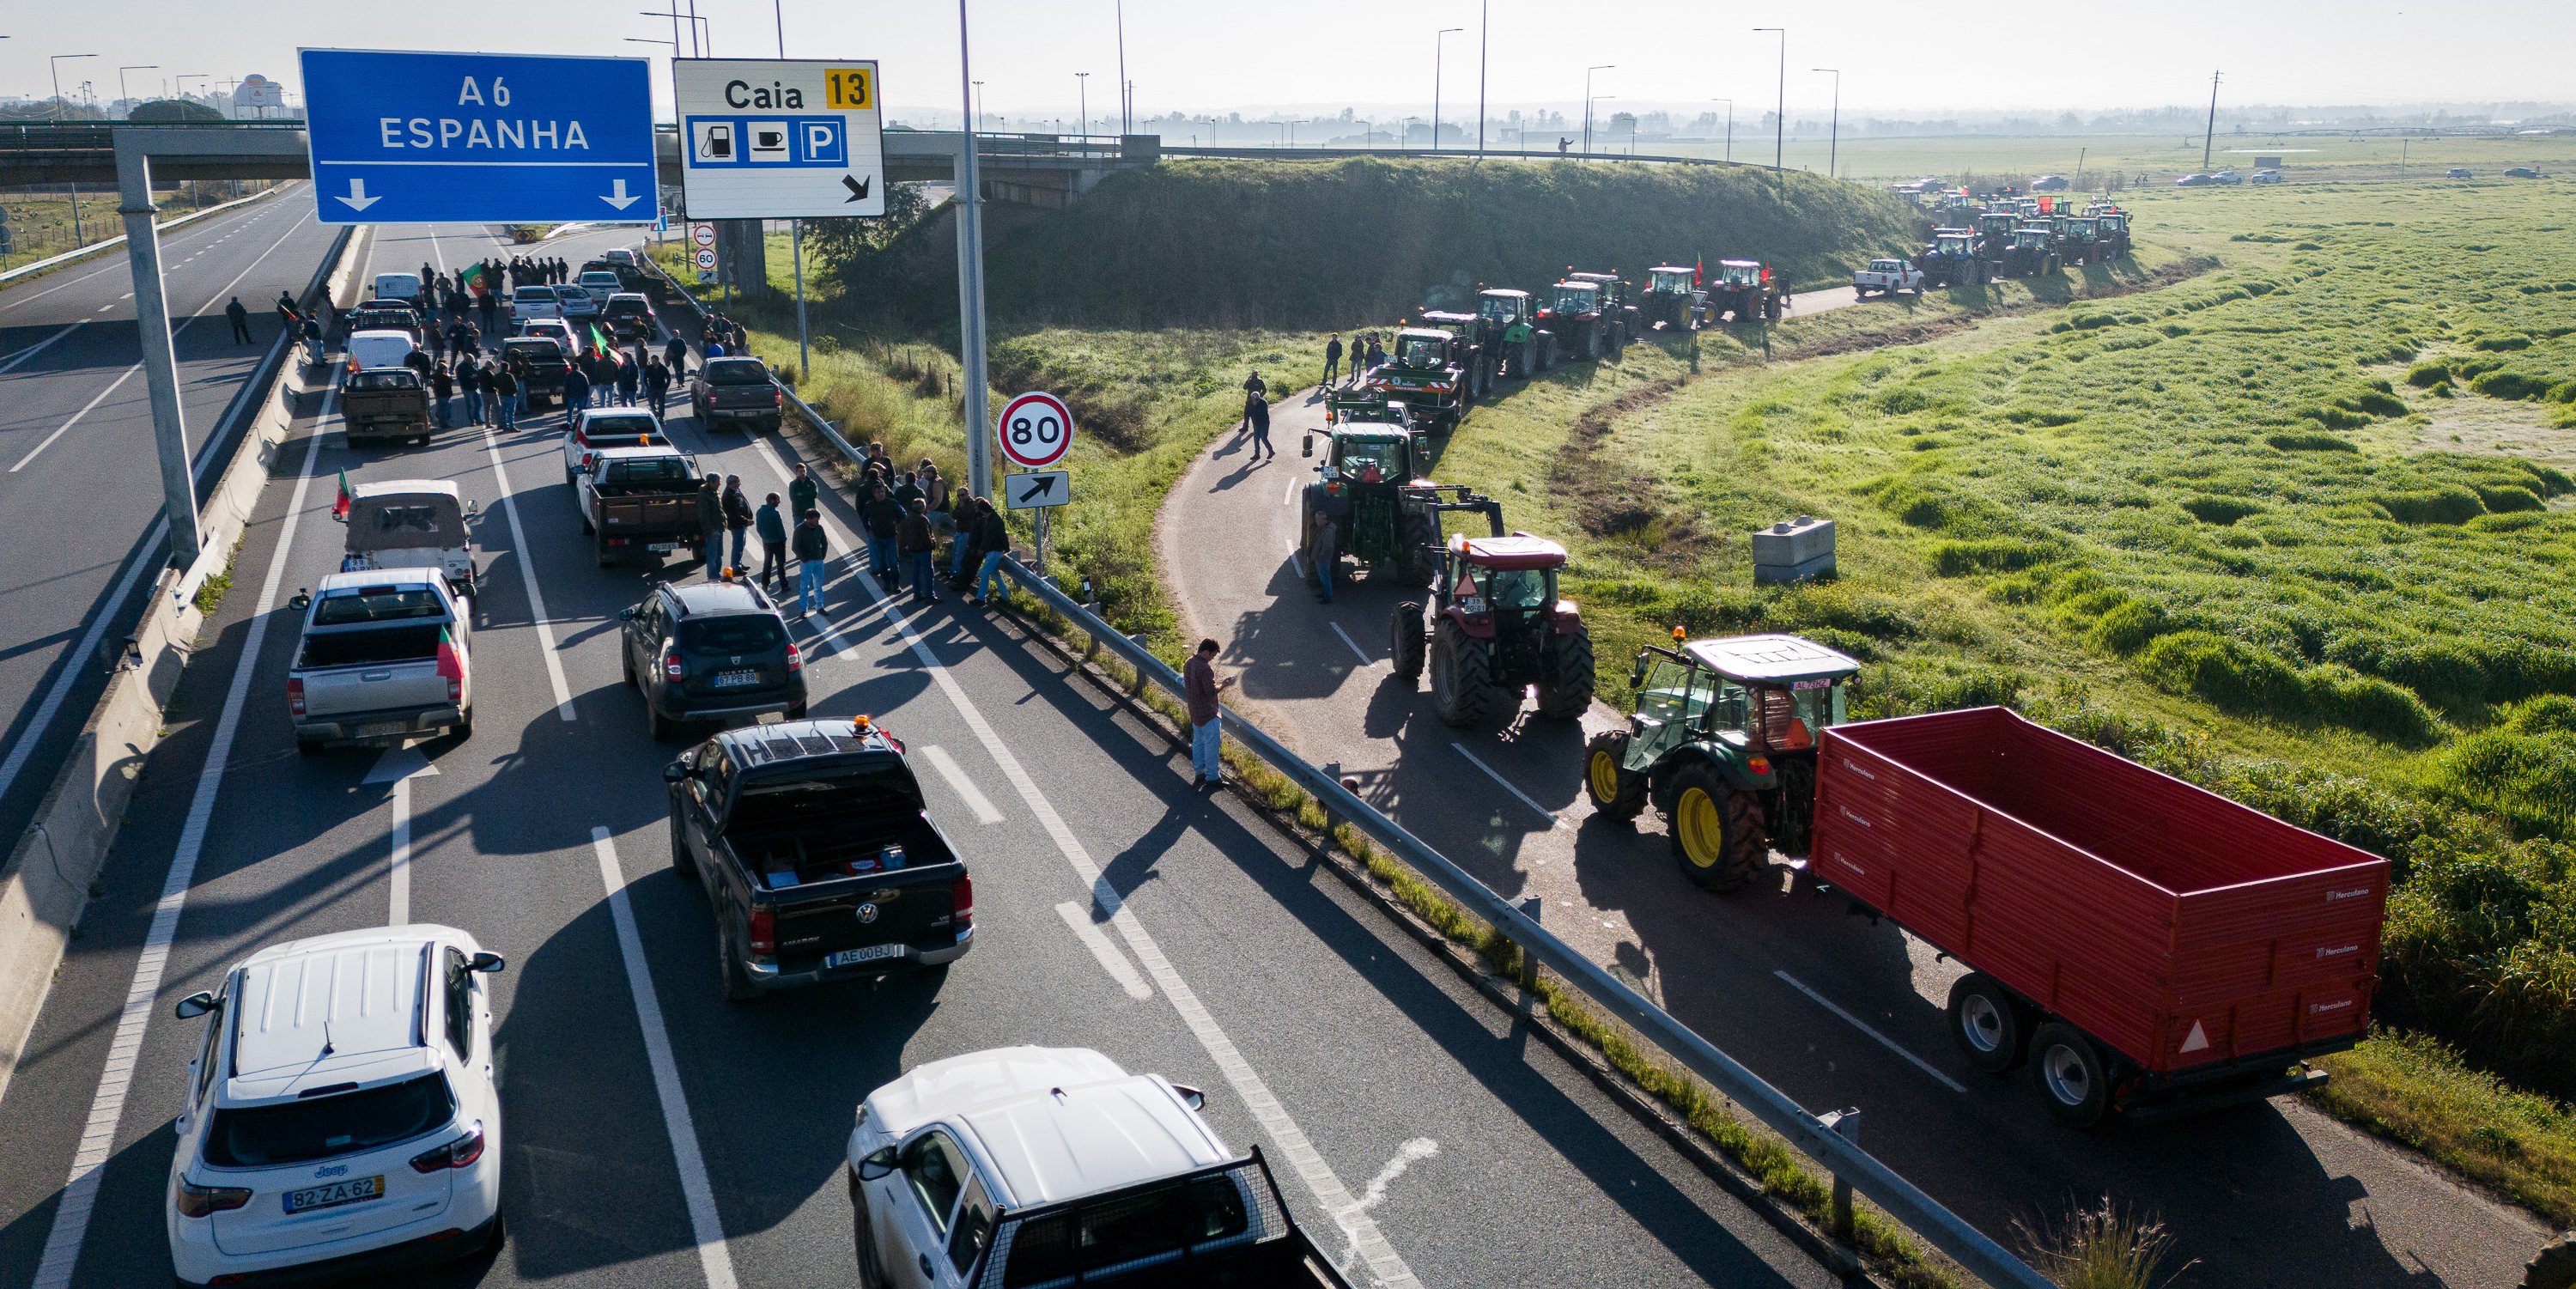 Protesto arrancou pouco depois das seis da manhã e levou ao bloqueio de várias estradas em Elvas, como Estrada Nacional 4 e A6